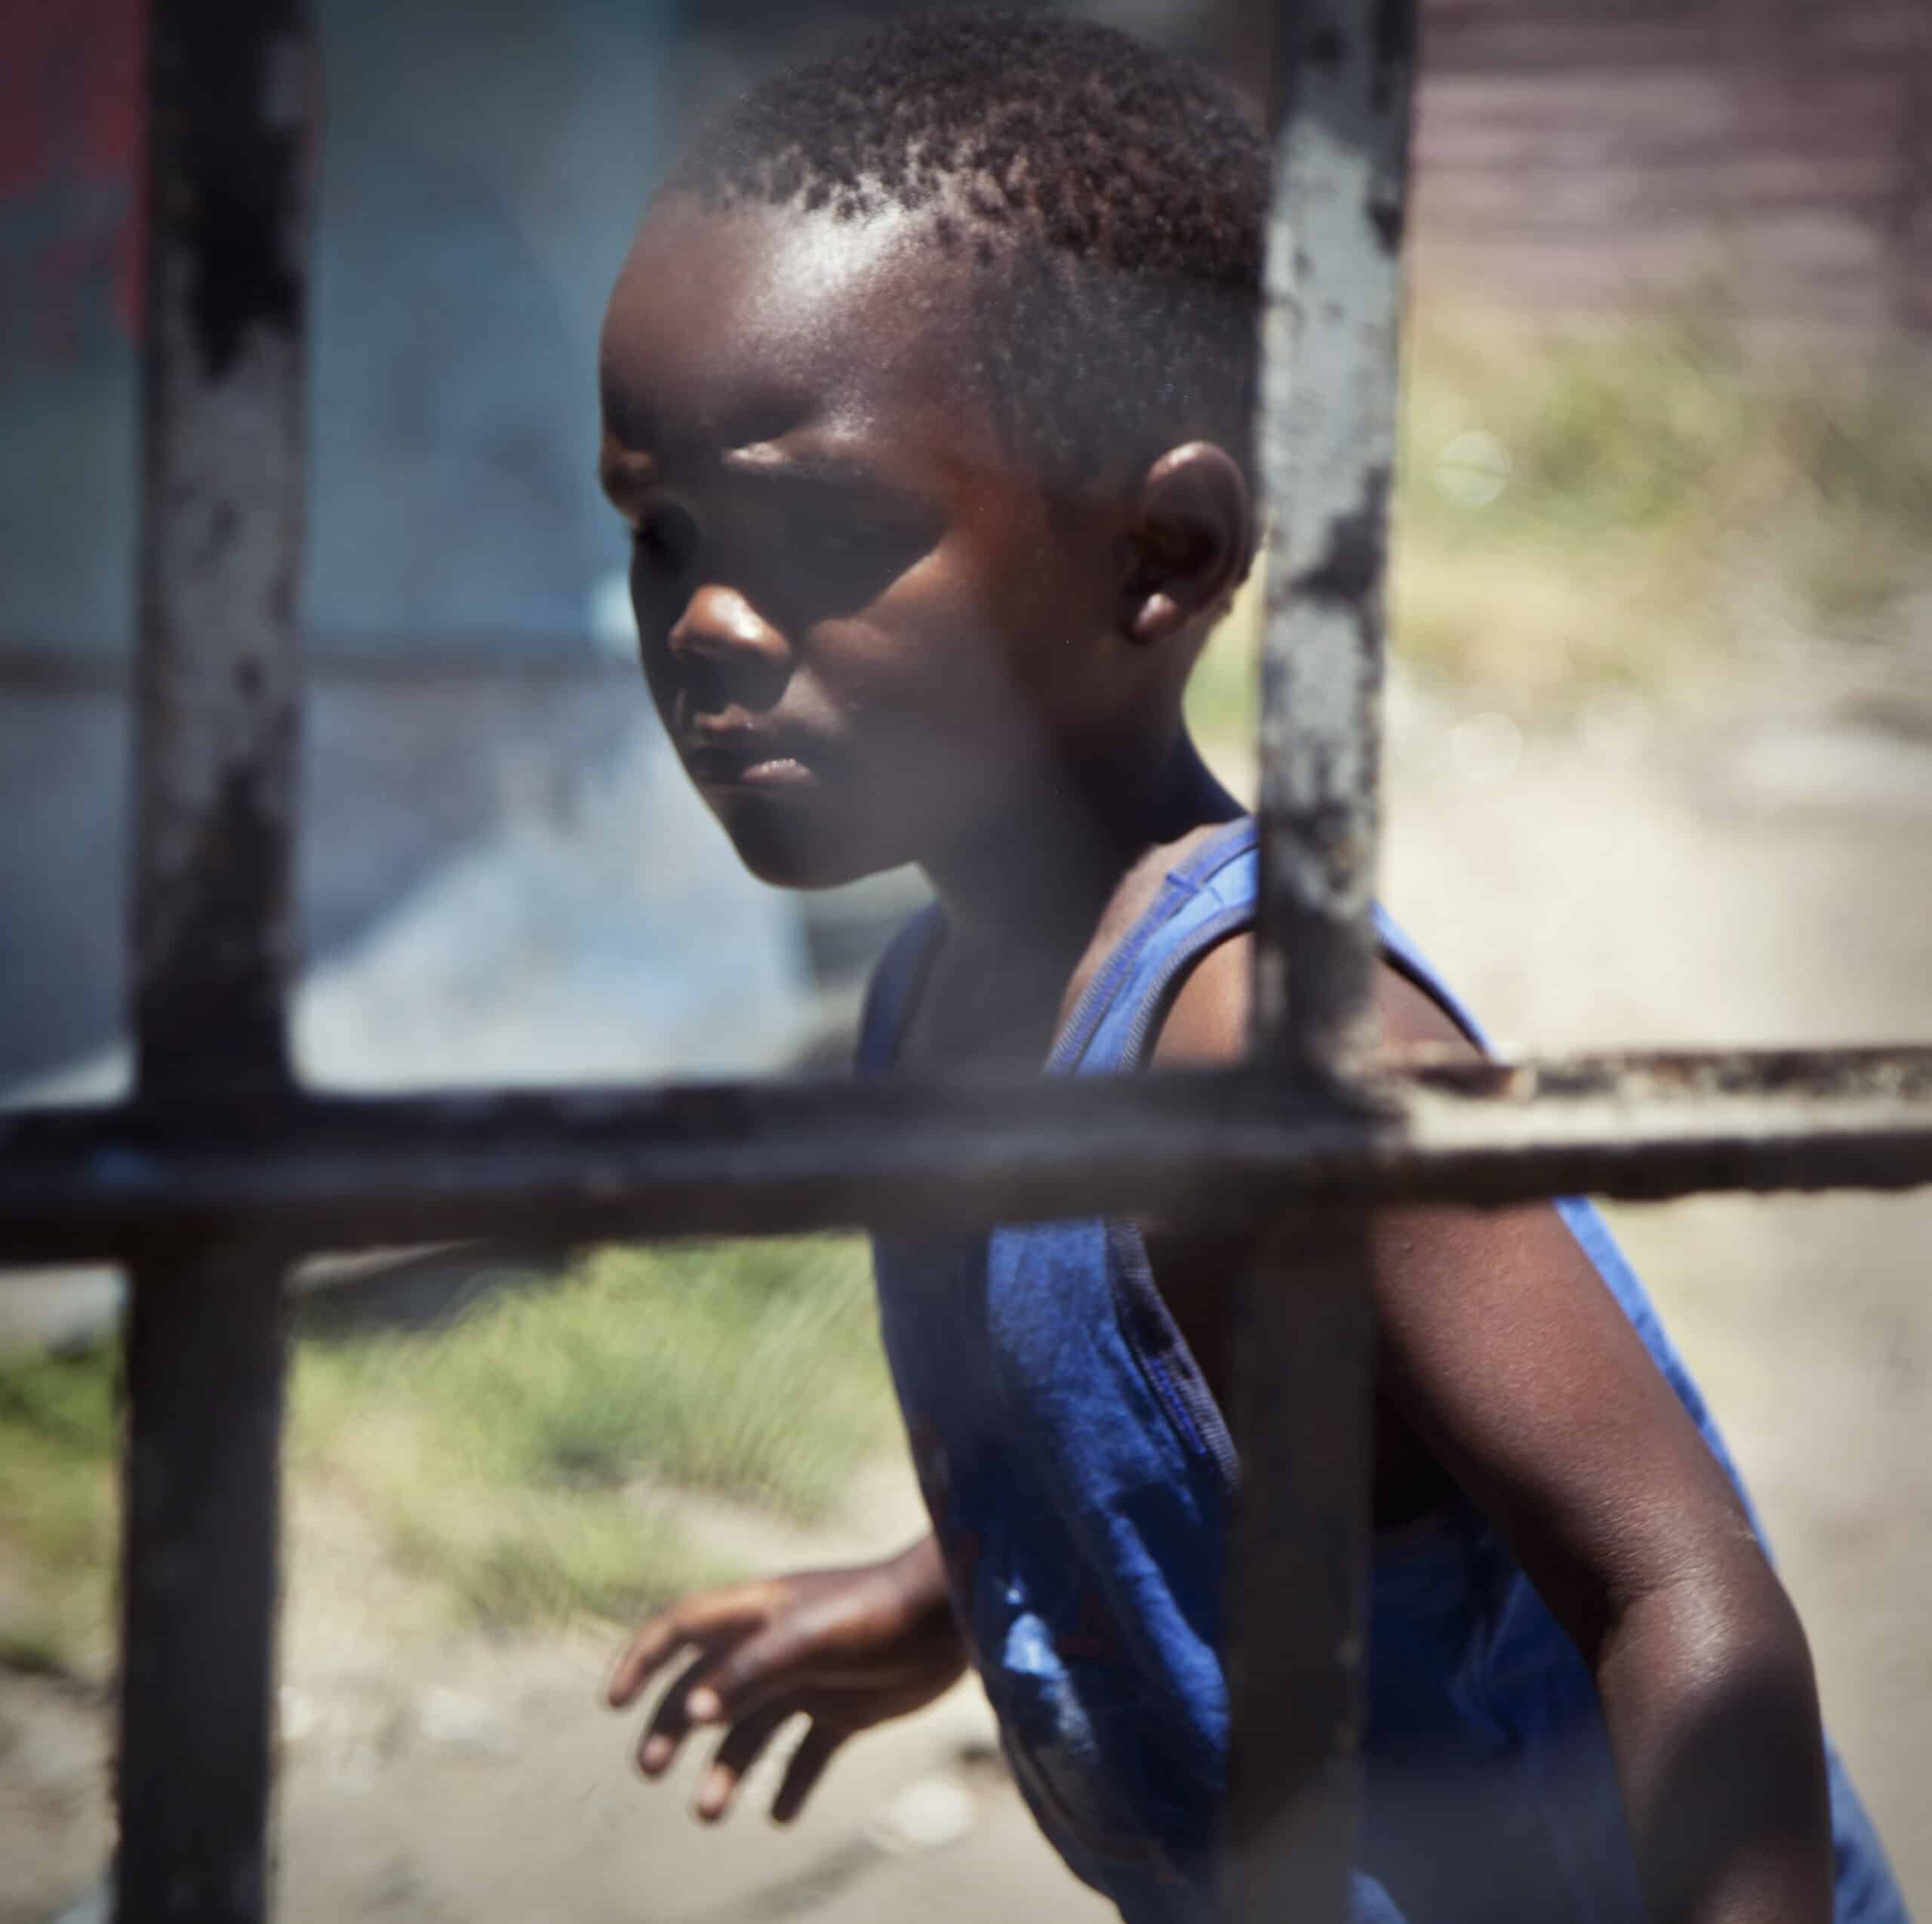 Ein kleiner Junge in einem blauen Tanktop steht hinter einem Metallgitter und blickt nachdenklich zur Seite. Das Bild ist leicht unscharf, was der Szene eine verträumte Qualität verleiht. © Fotografie Tomas Rodriguez